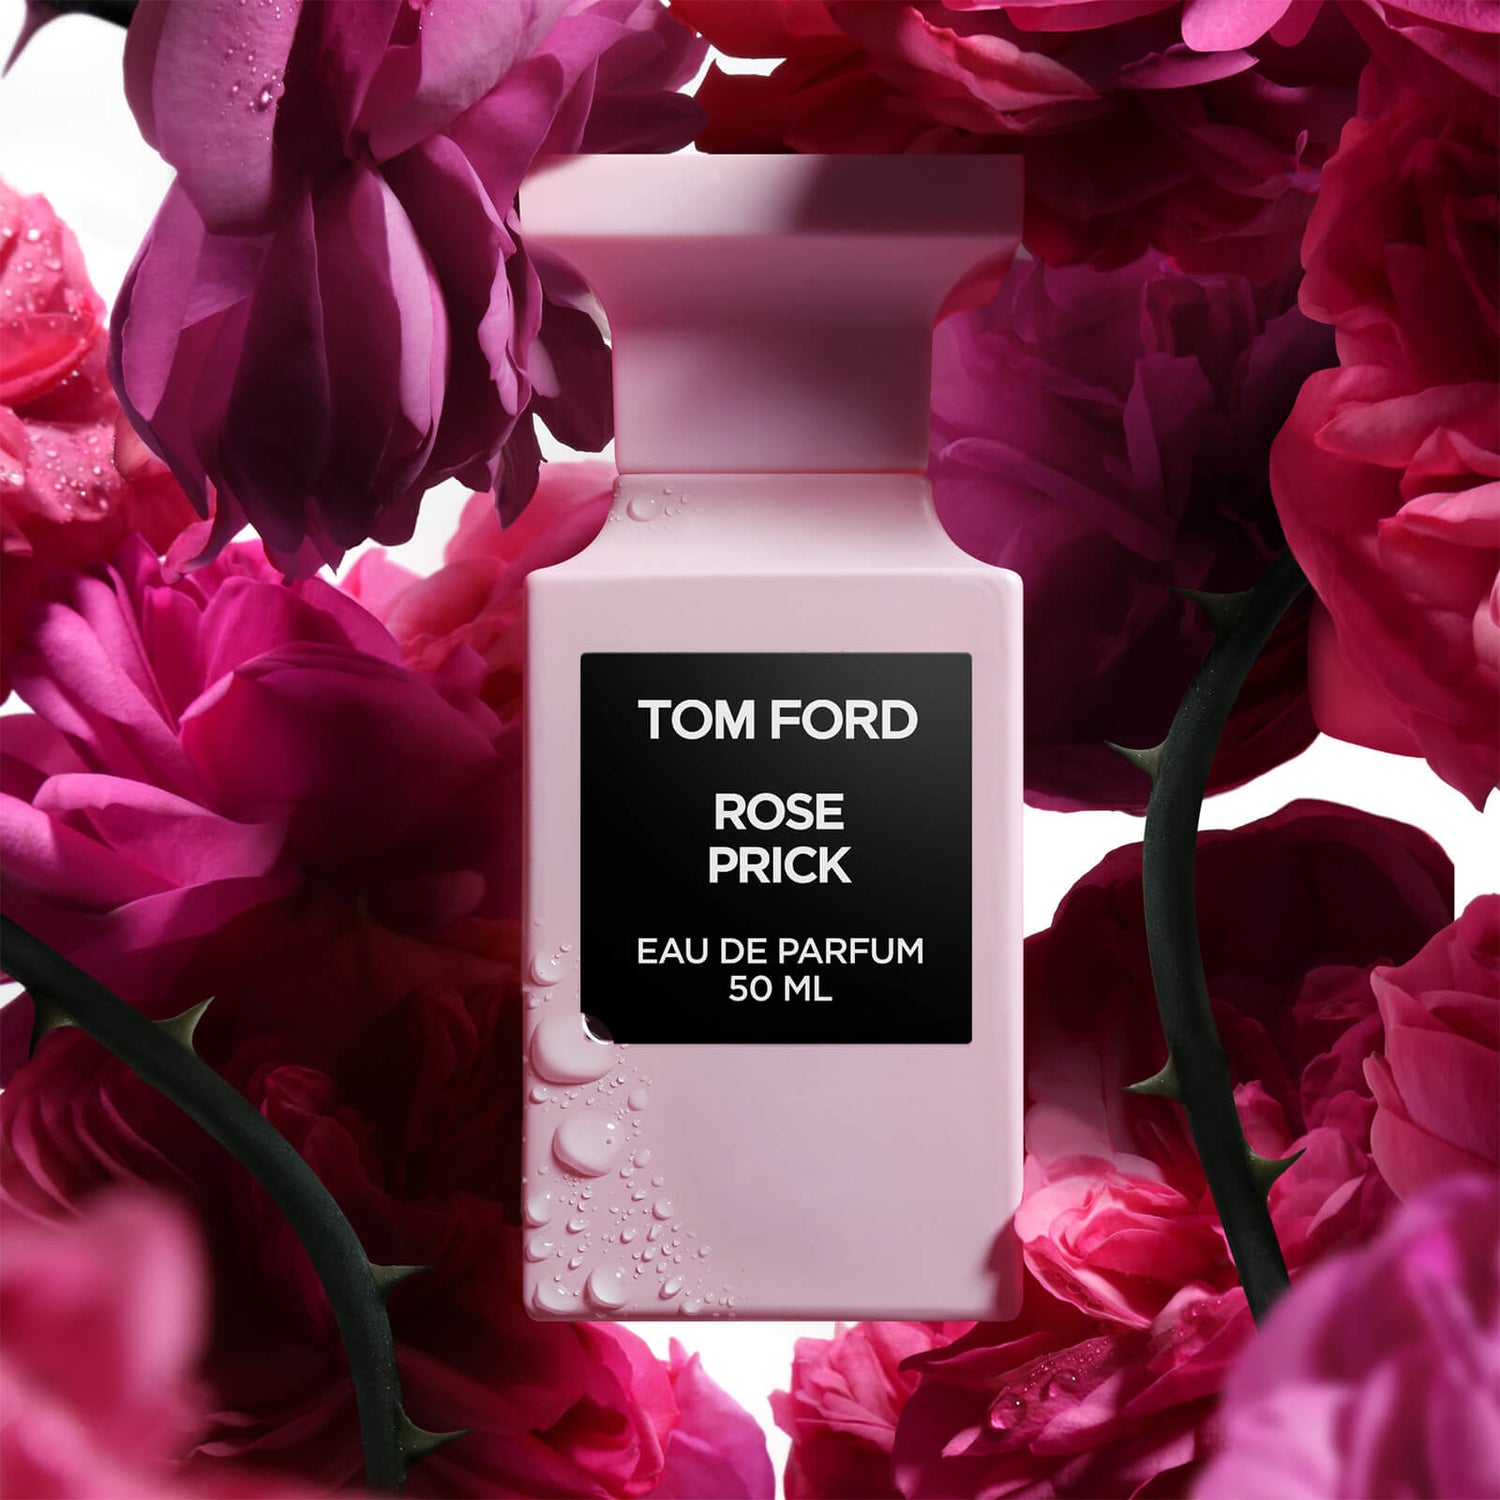 Tom Ford Rose Prick Eau de Parfum Spray - 50ml